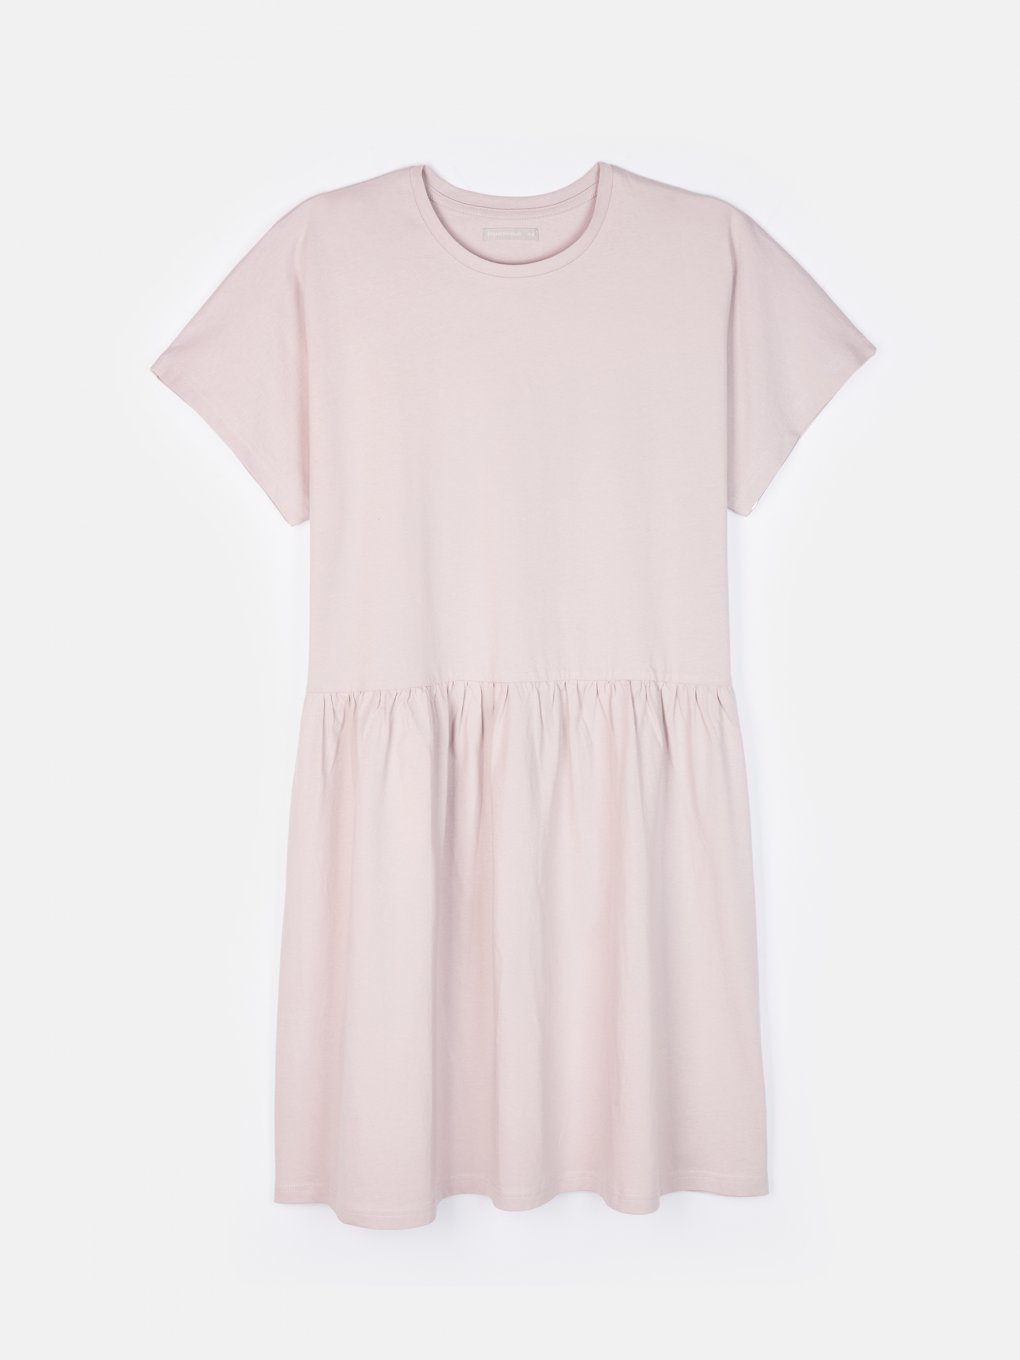 Plus size plain cotton dress